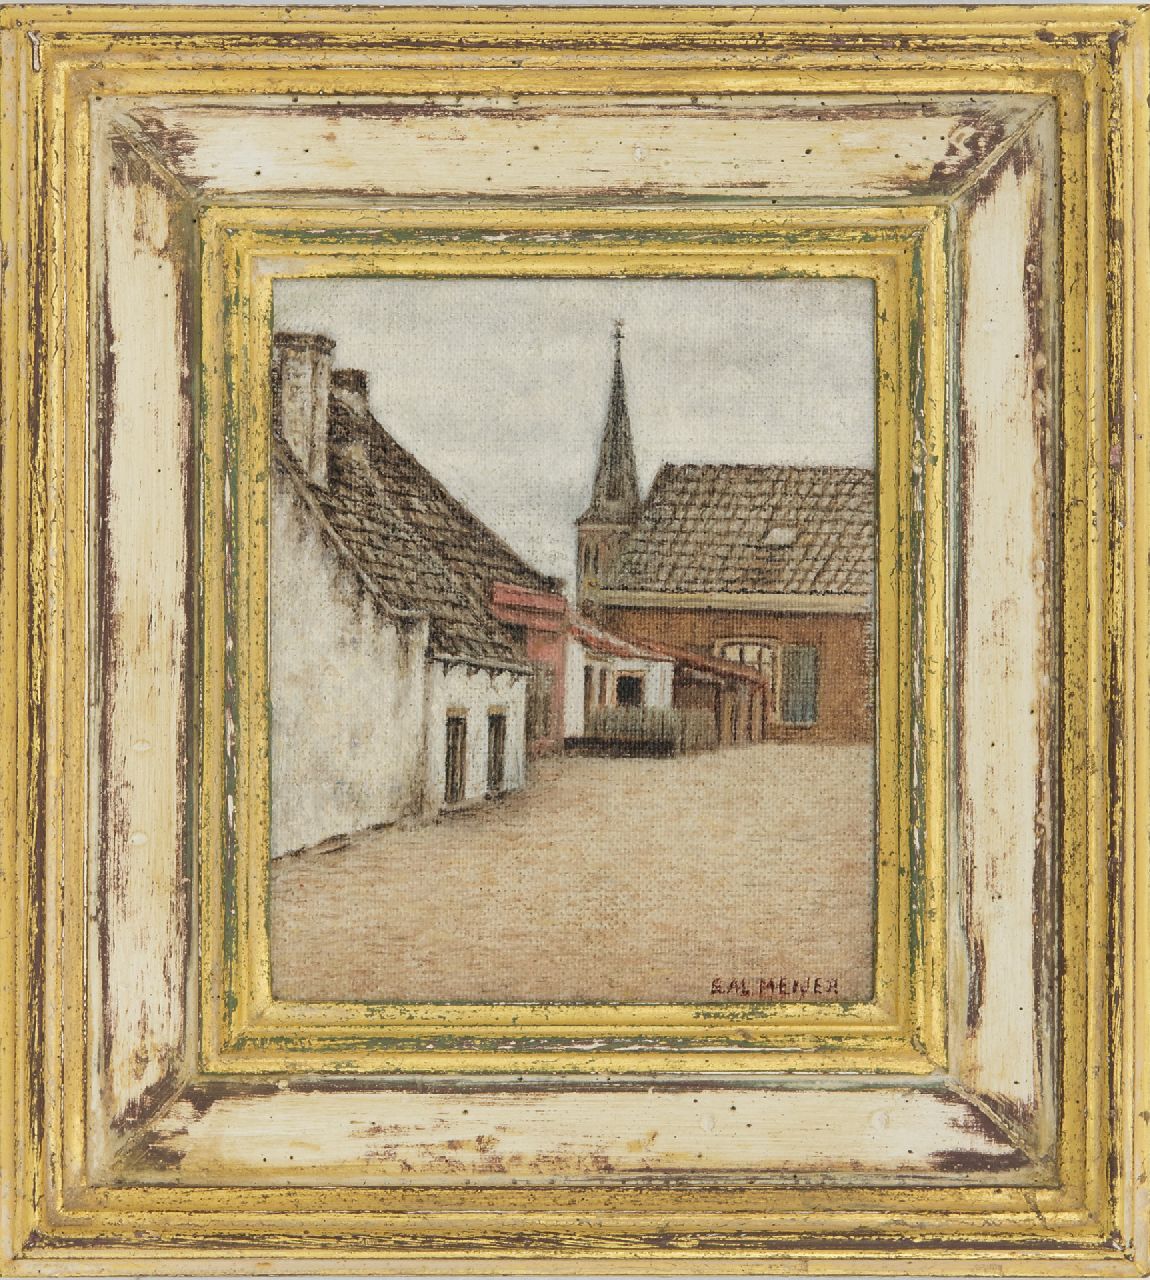 Meijer S.  | Salomon 'Sal' Meijer | Schilderijen te koop aangeboden | Dorpsgezicht (mogelijk Zandvoort), olieverf op doek op board 14,5 x 11,3 cm, gesigneerd rechtsonder